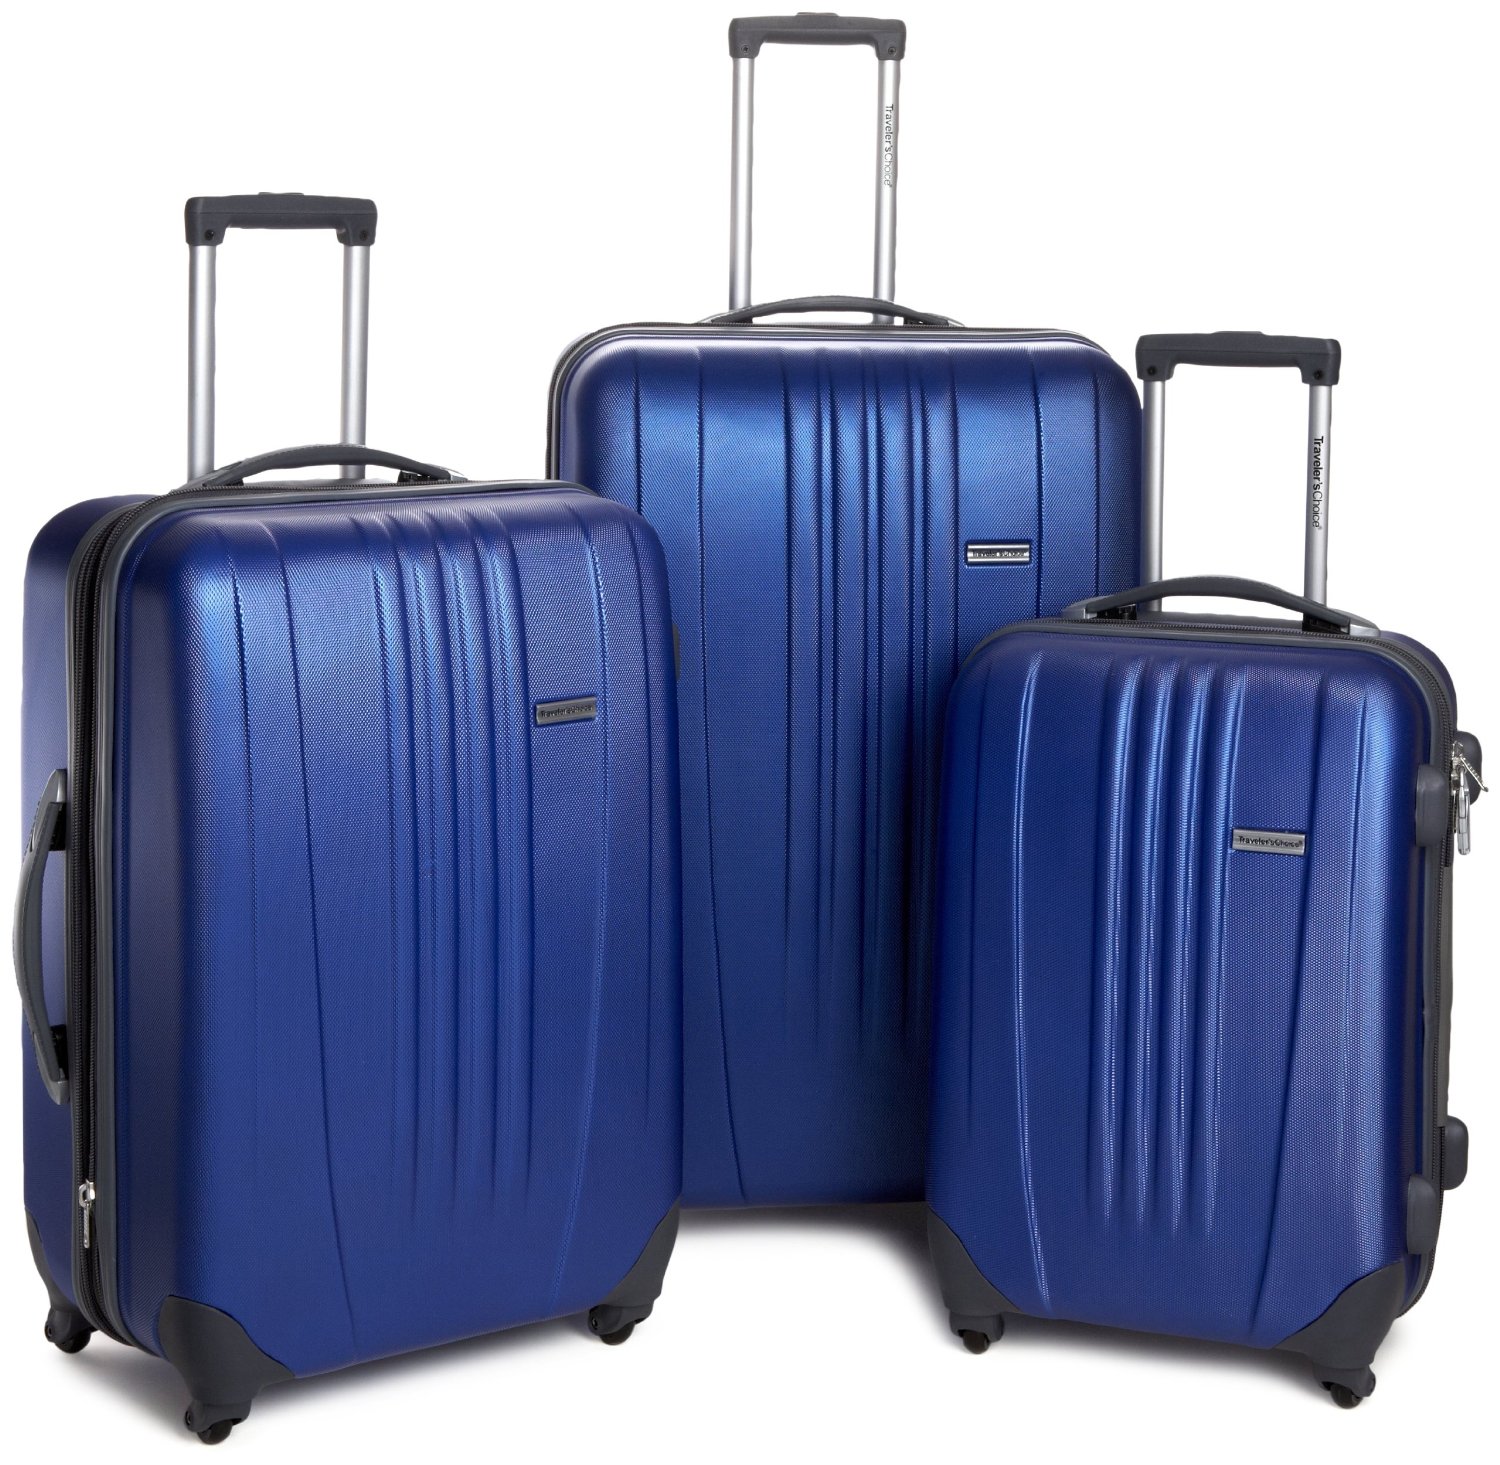 手快有！Travelers Choice Luggage Toronto 硬殼拉杆箱3件套 $86.39免運費